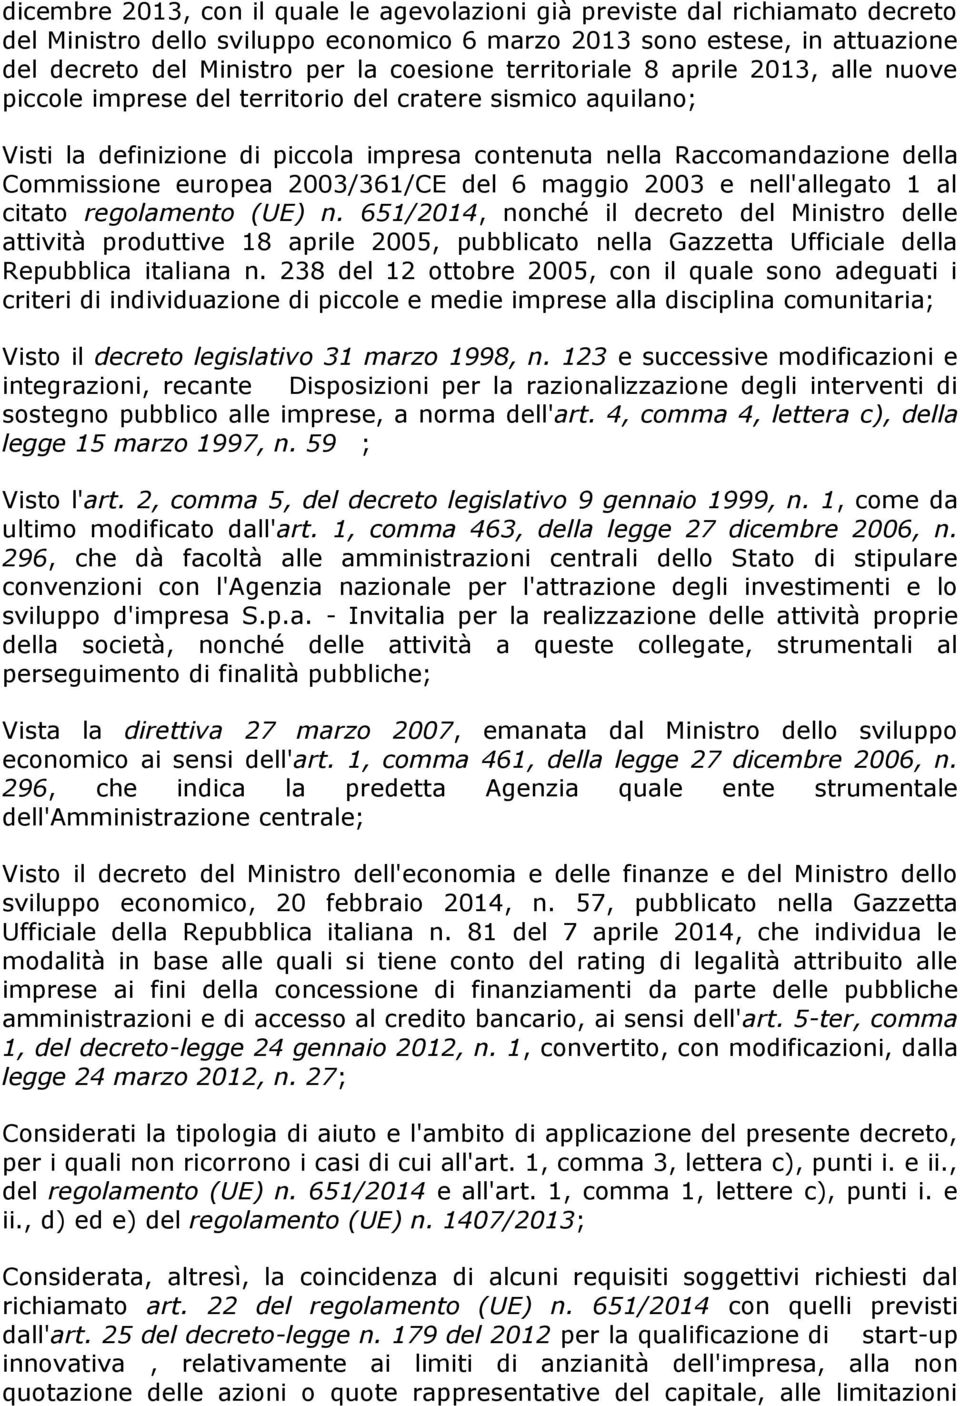 2003/361/CE del 6 maggio 2003 e nell'allegato 1 al citato regolamento (UE) n.